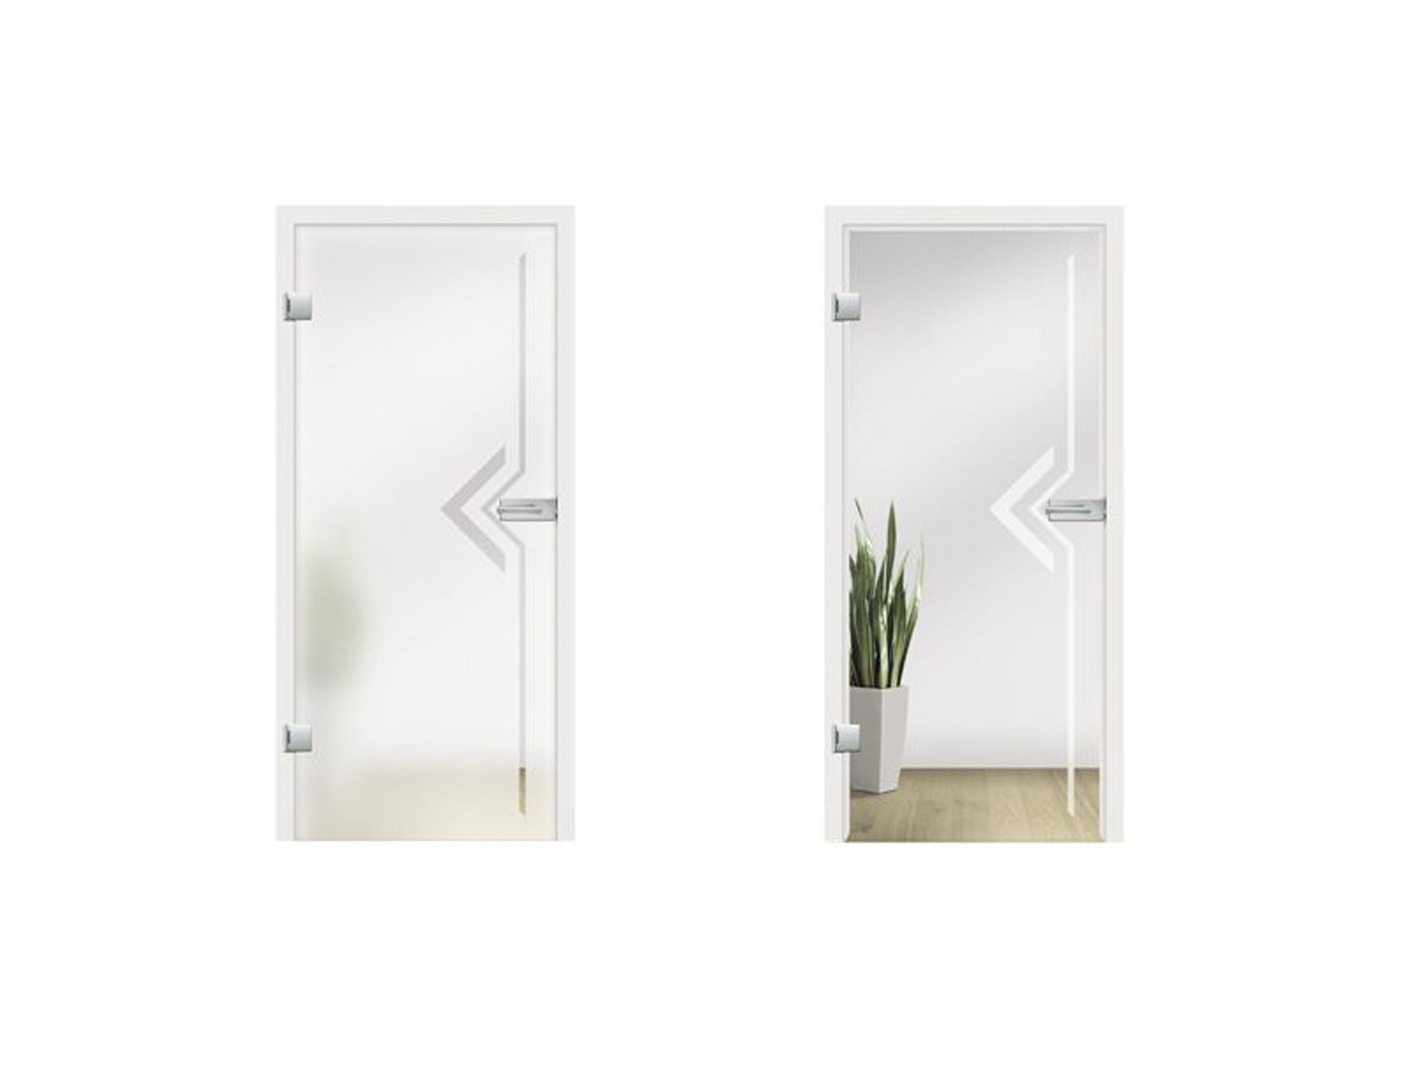 Palia Glass Door Design - Sandblast Designs Glass Doors